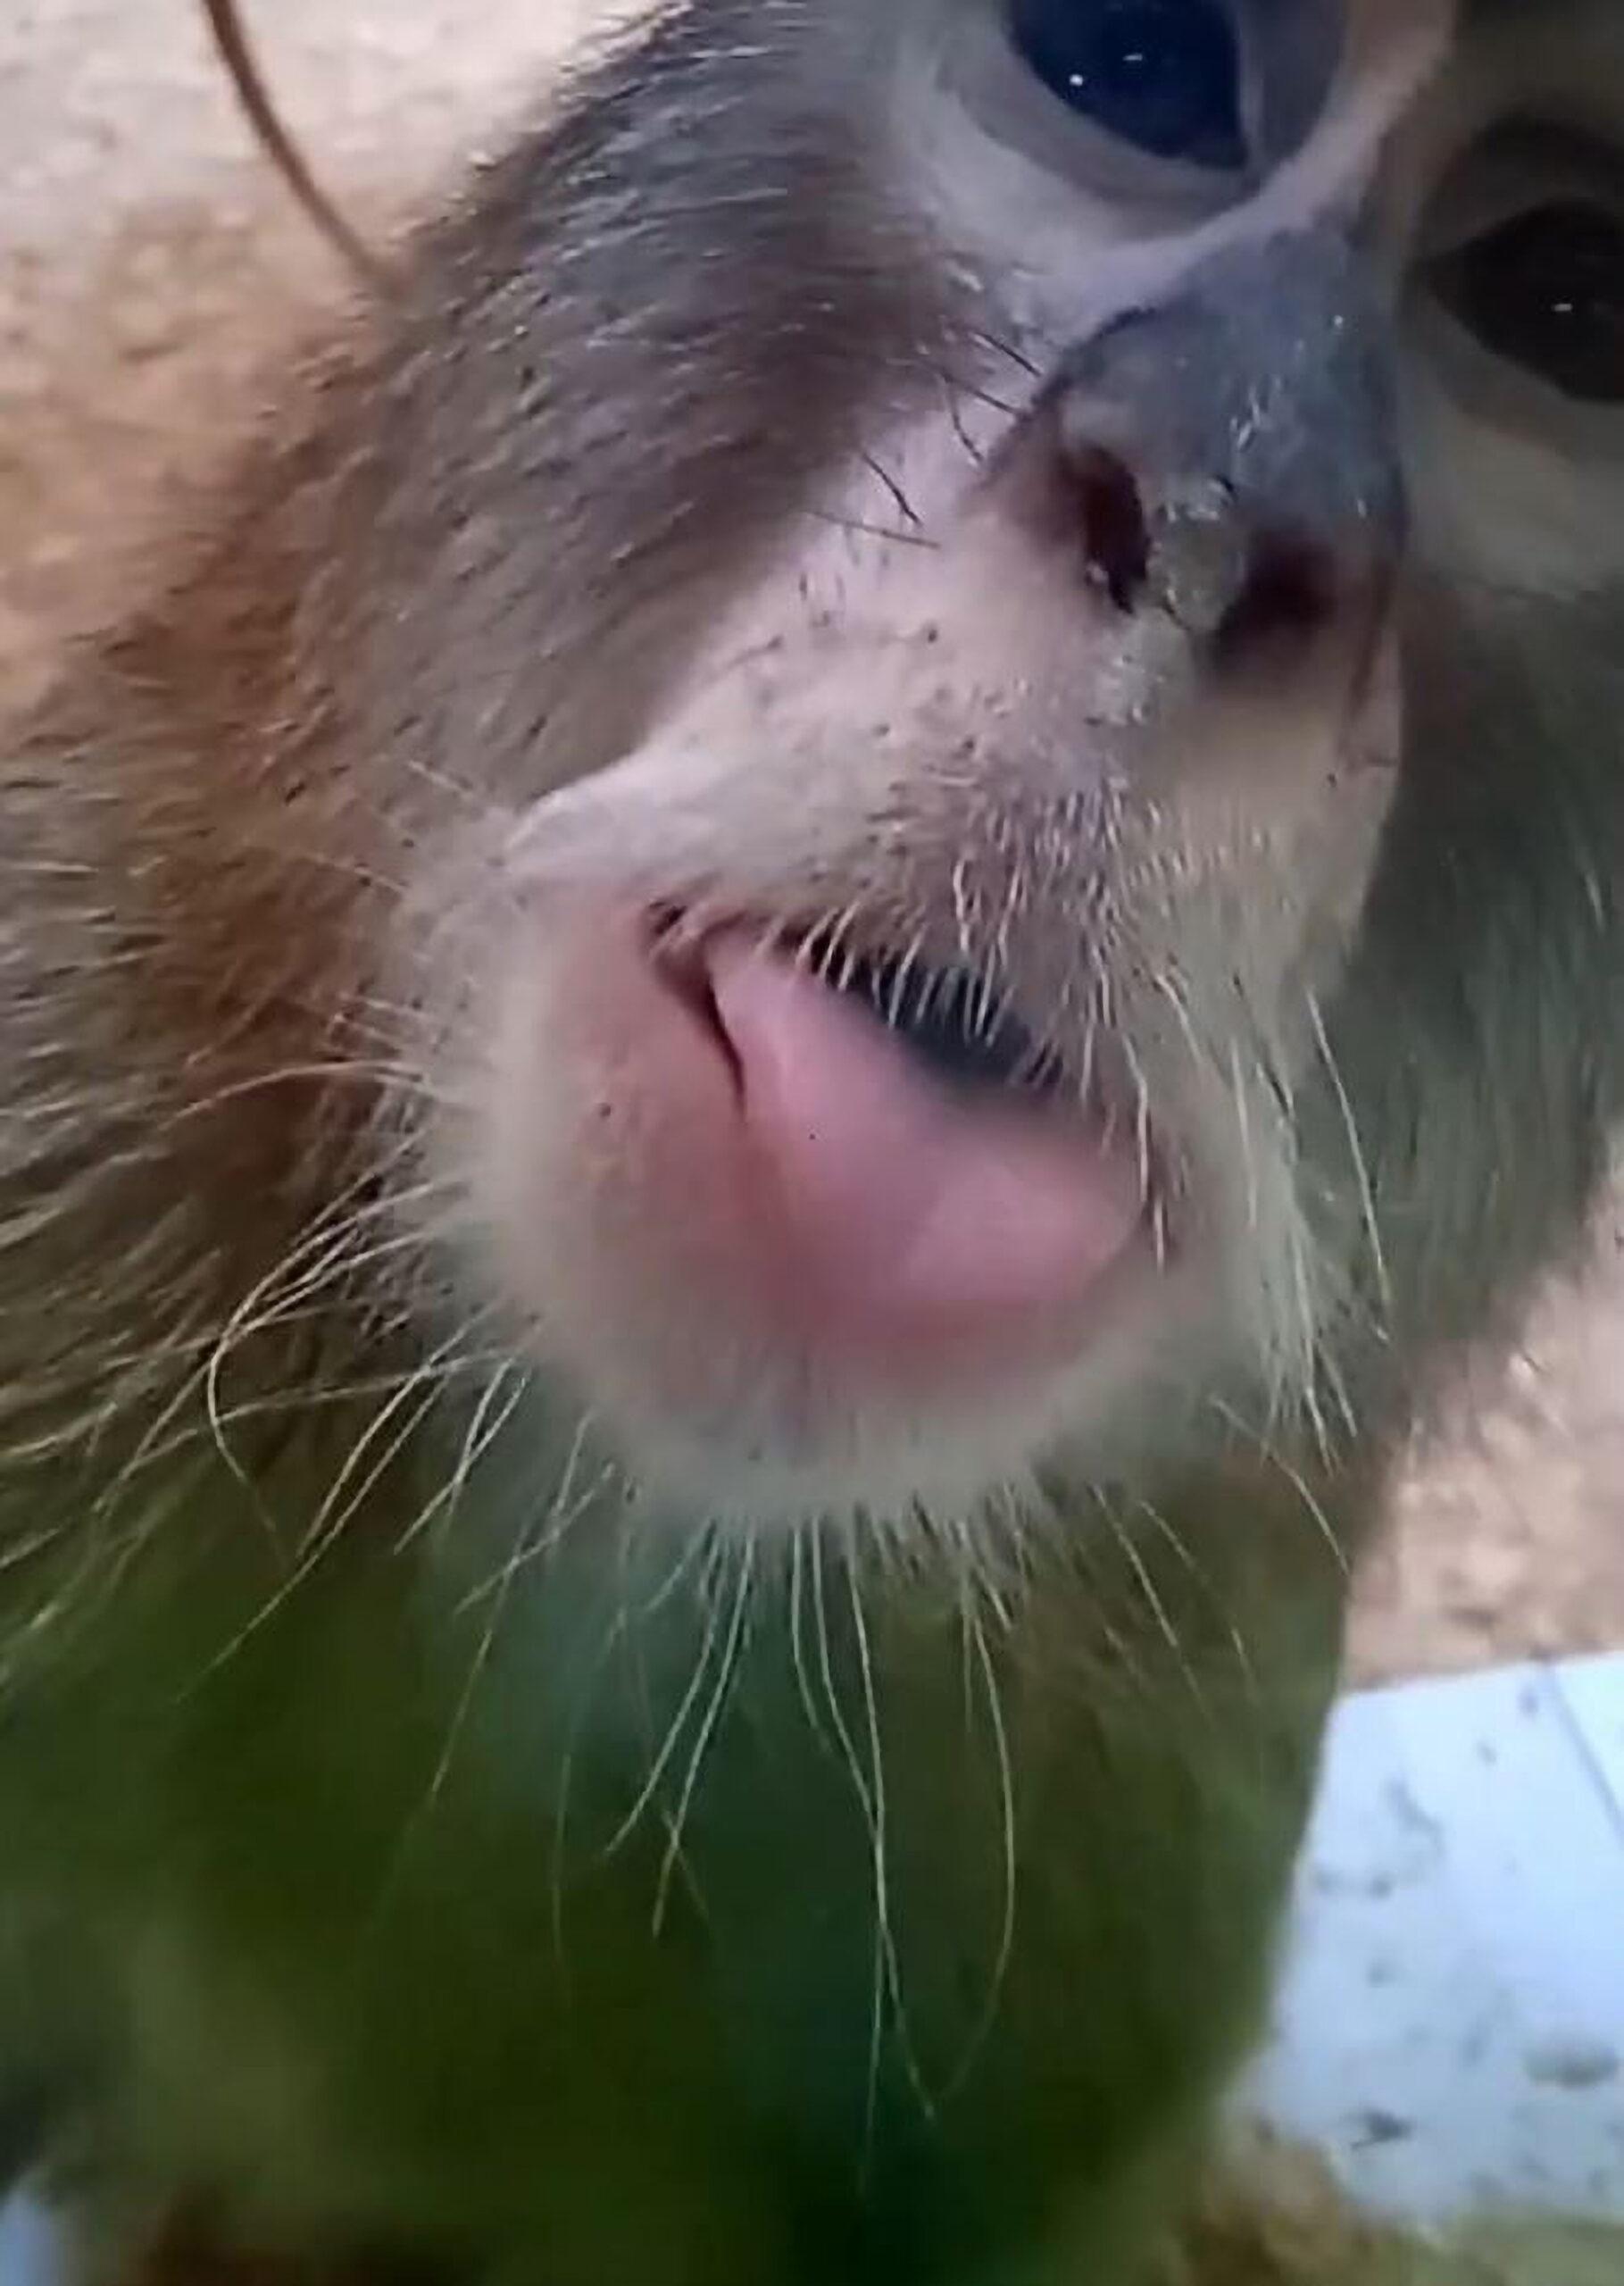 Cheeky Monkey Sticks Out Tongue At Camera…